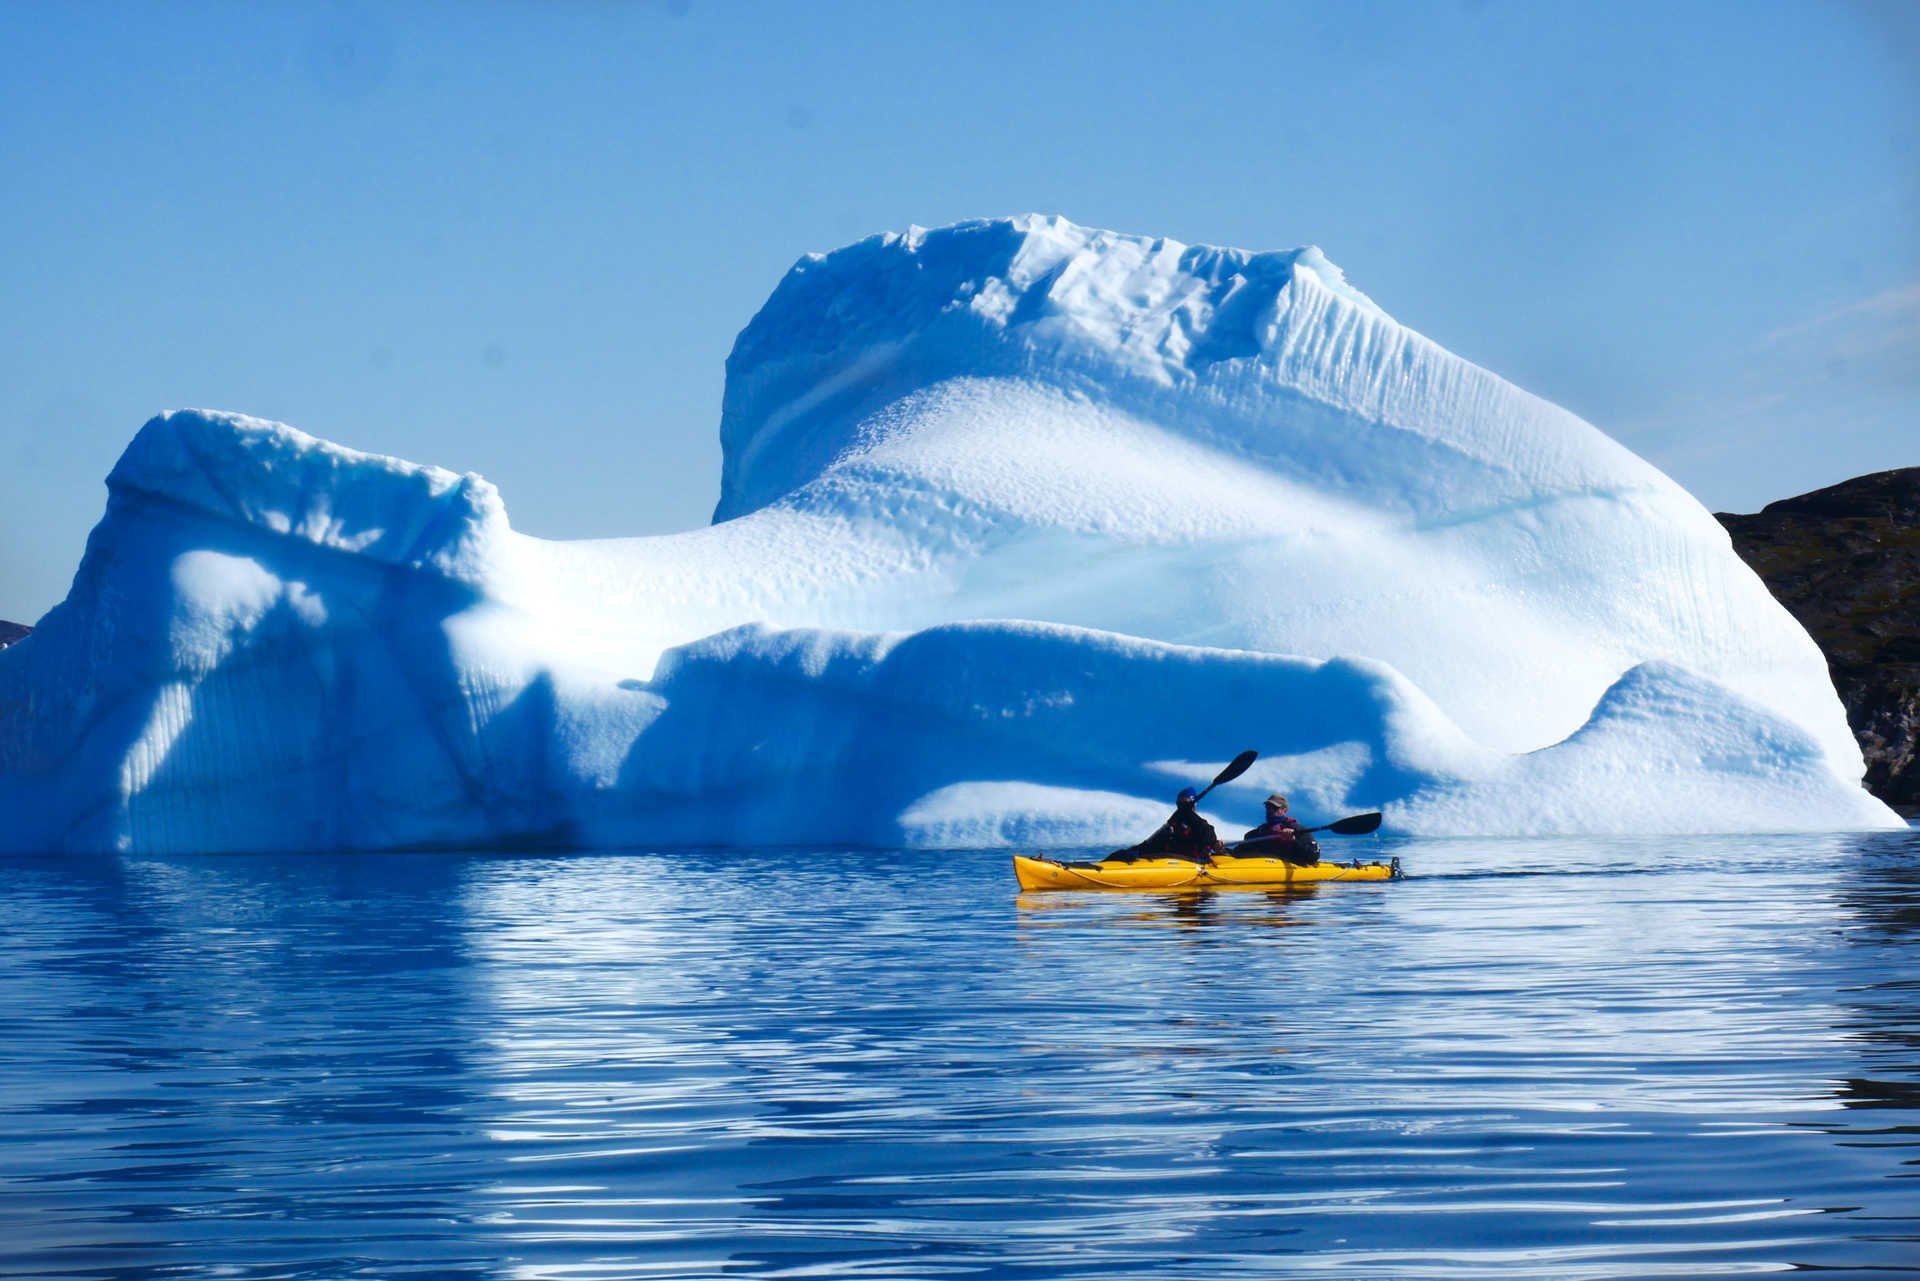 Sea kayaking among icebergs